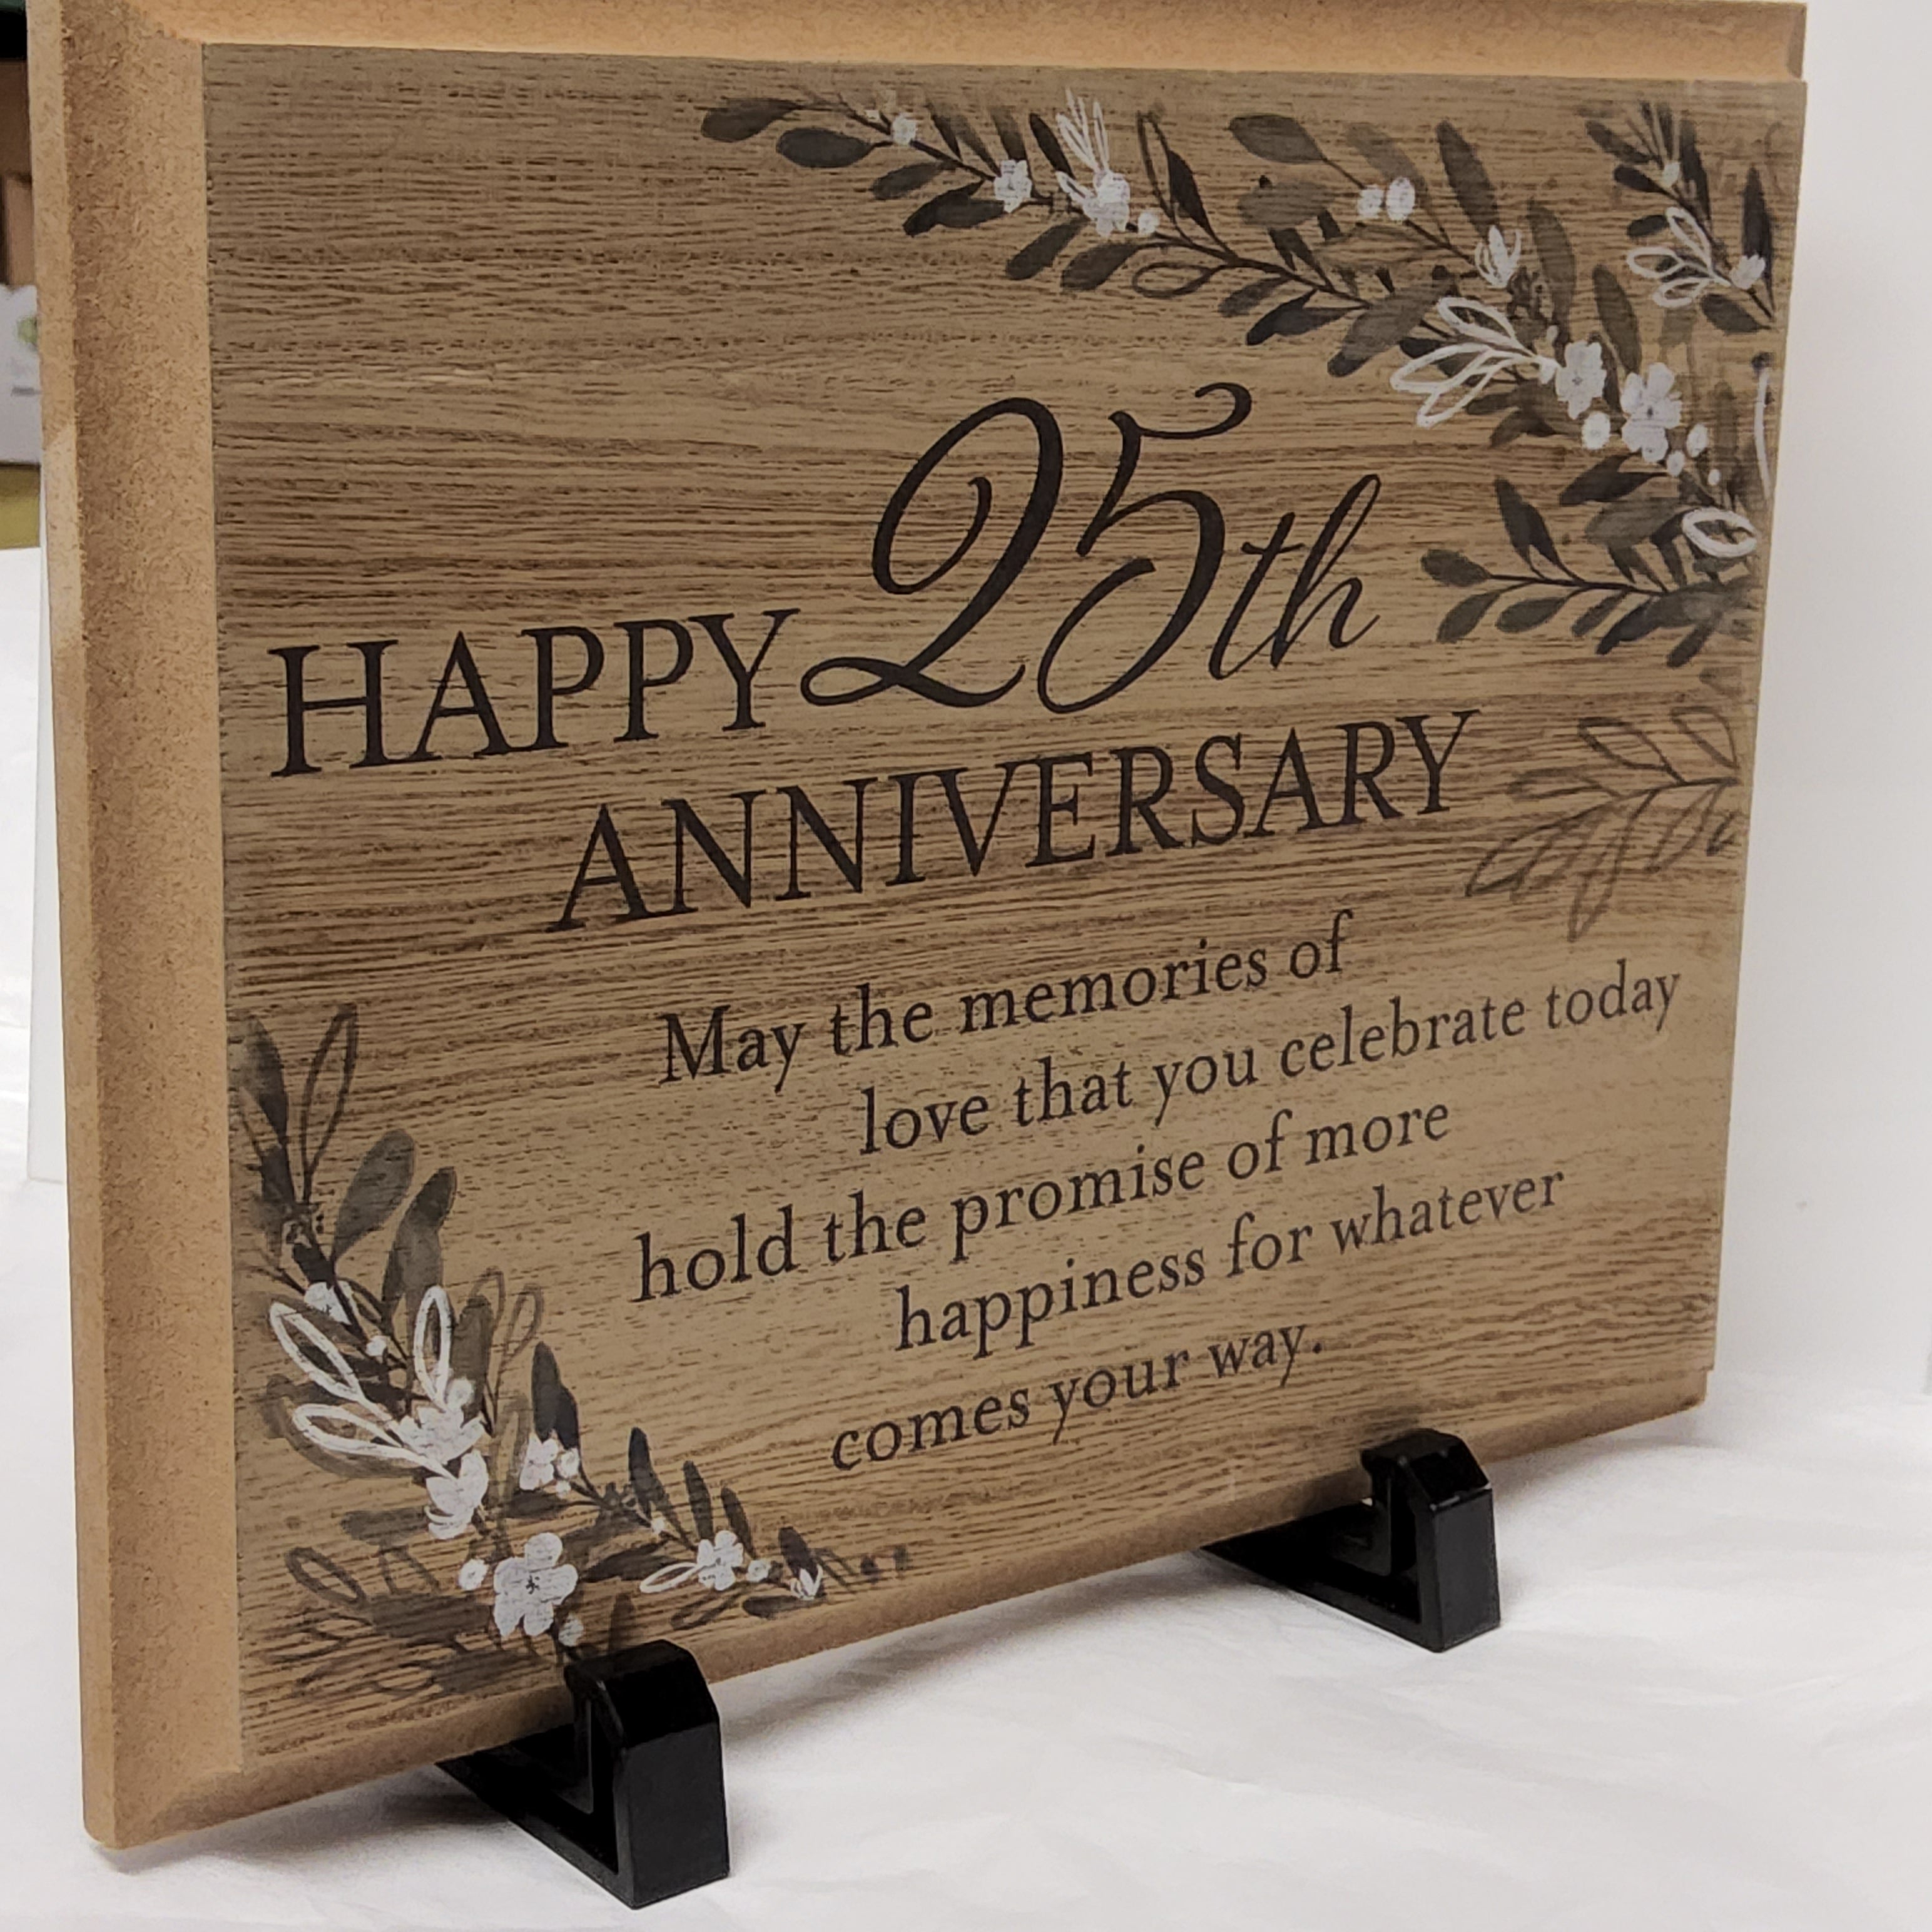 Happy 25th Anniversary - Wood Plaque CS25157